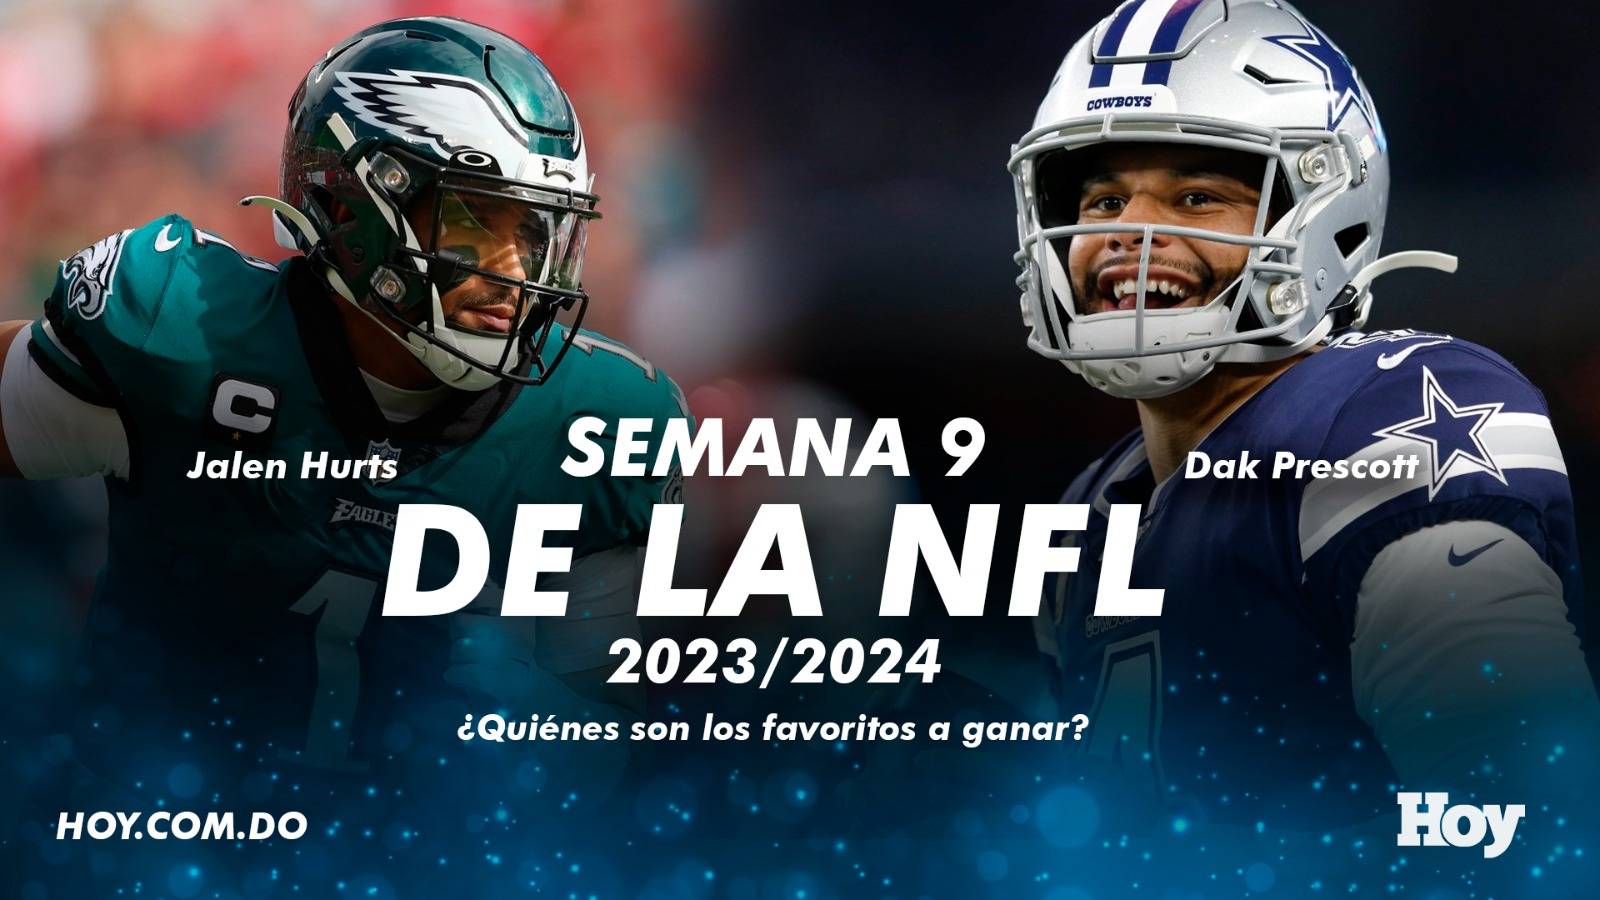 Semana 9 de la NFL 2023-2024: ¿Quiénes son los favoritos a ganar?